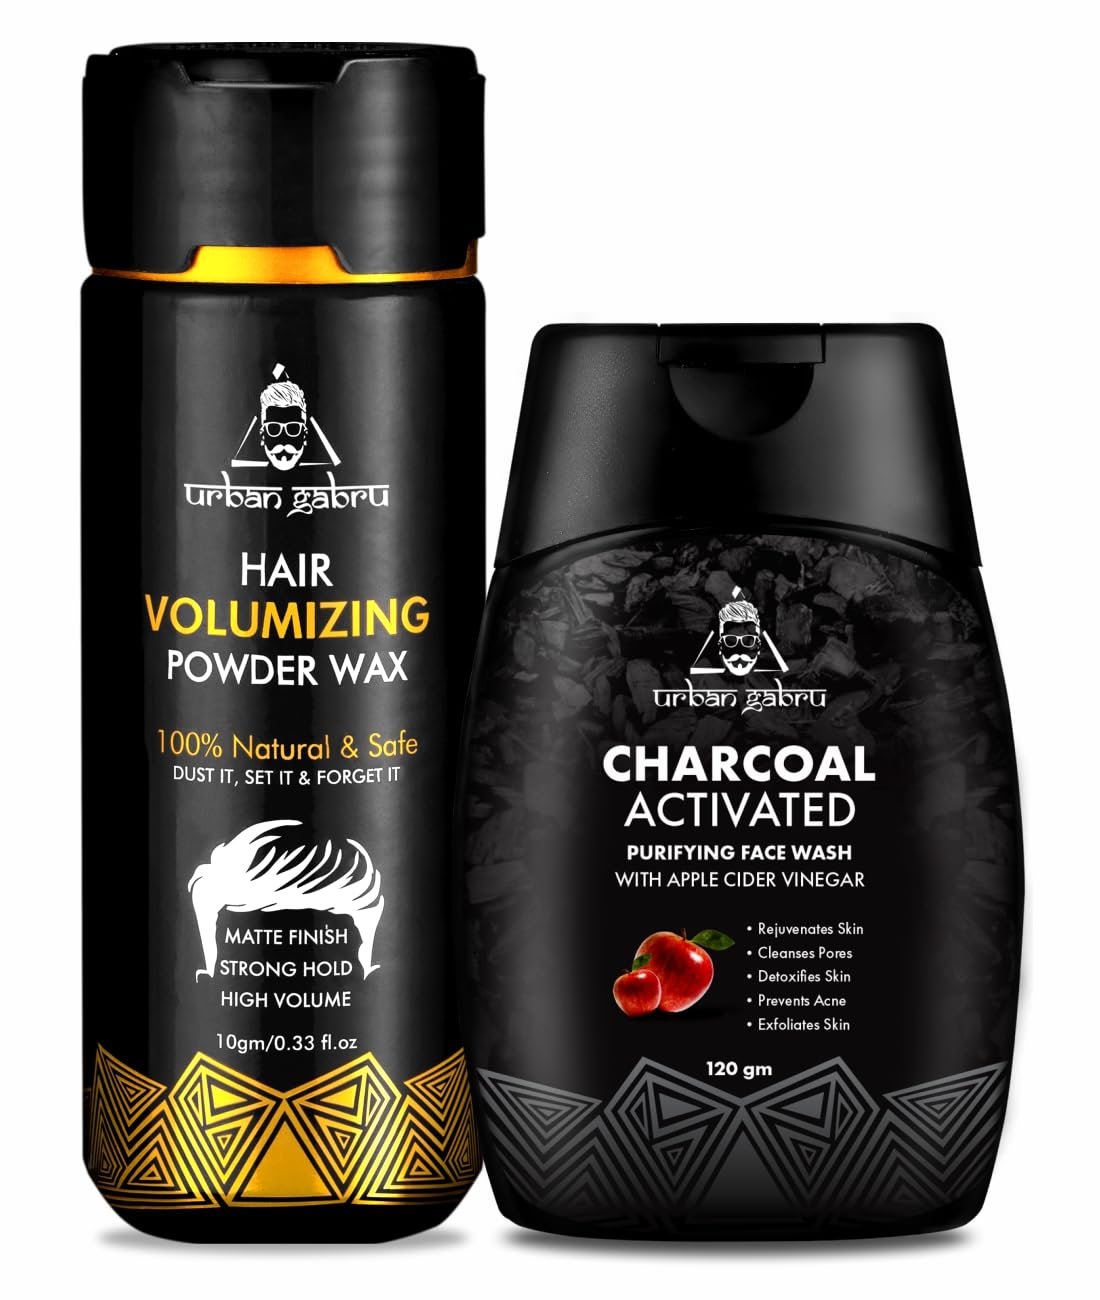 Urbangabru Hair Volumizing Powder 10 GM & Charcoal Face Wash 120 GM - Men's Grooming Combo Kit